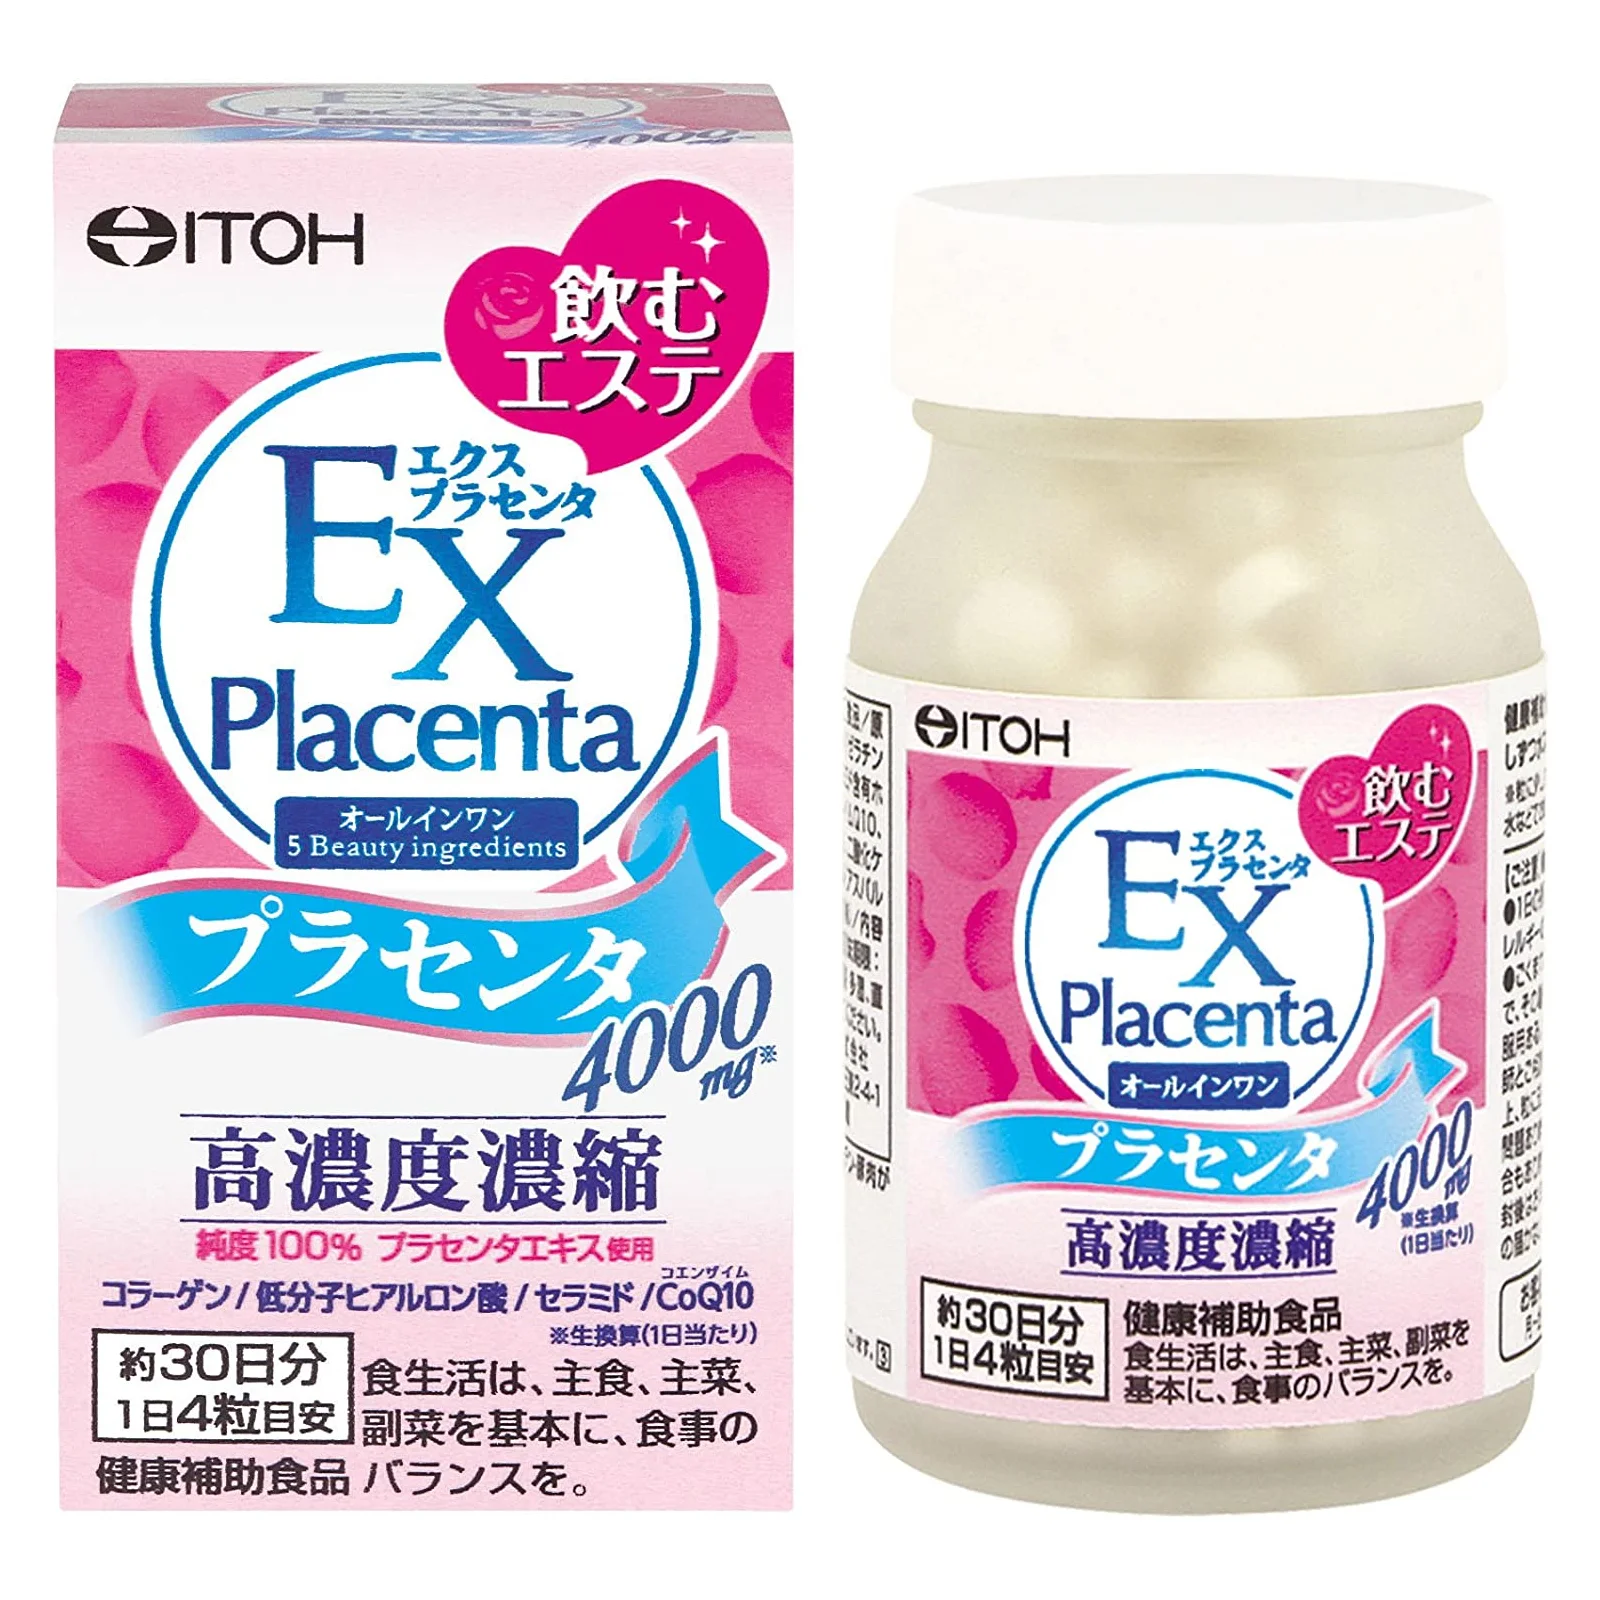 Японские препараты купить. Биодобавка экстракт плаценты ex placenta. Антивозрастной комплекс с экстрактом плаценты Itoh ex placenta. +Placenta японский препарат. Экстракт плаценты Япония.